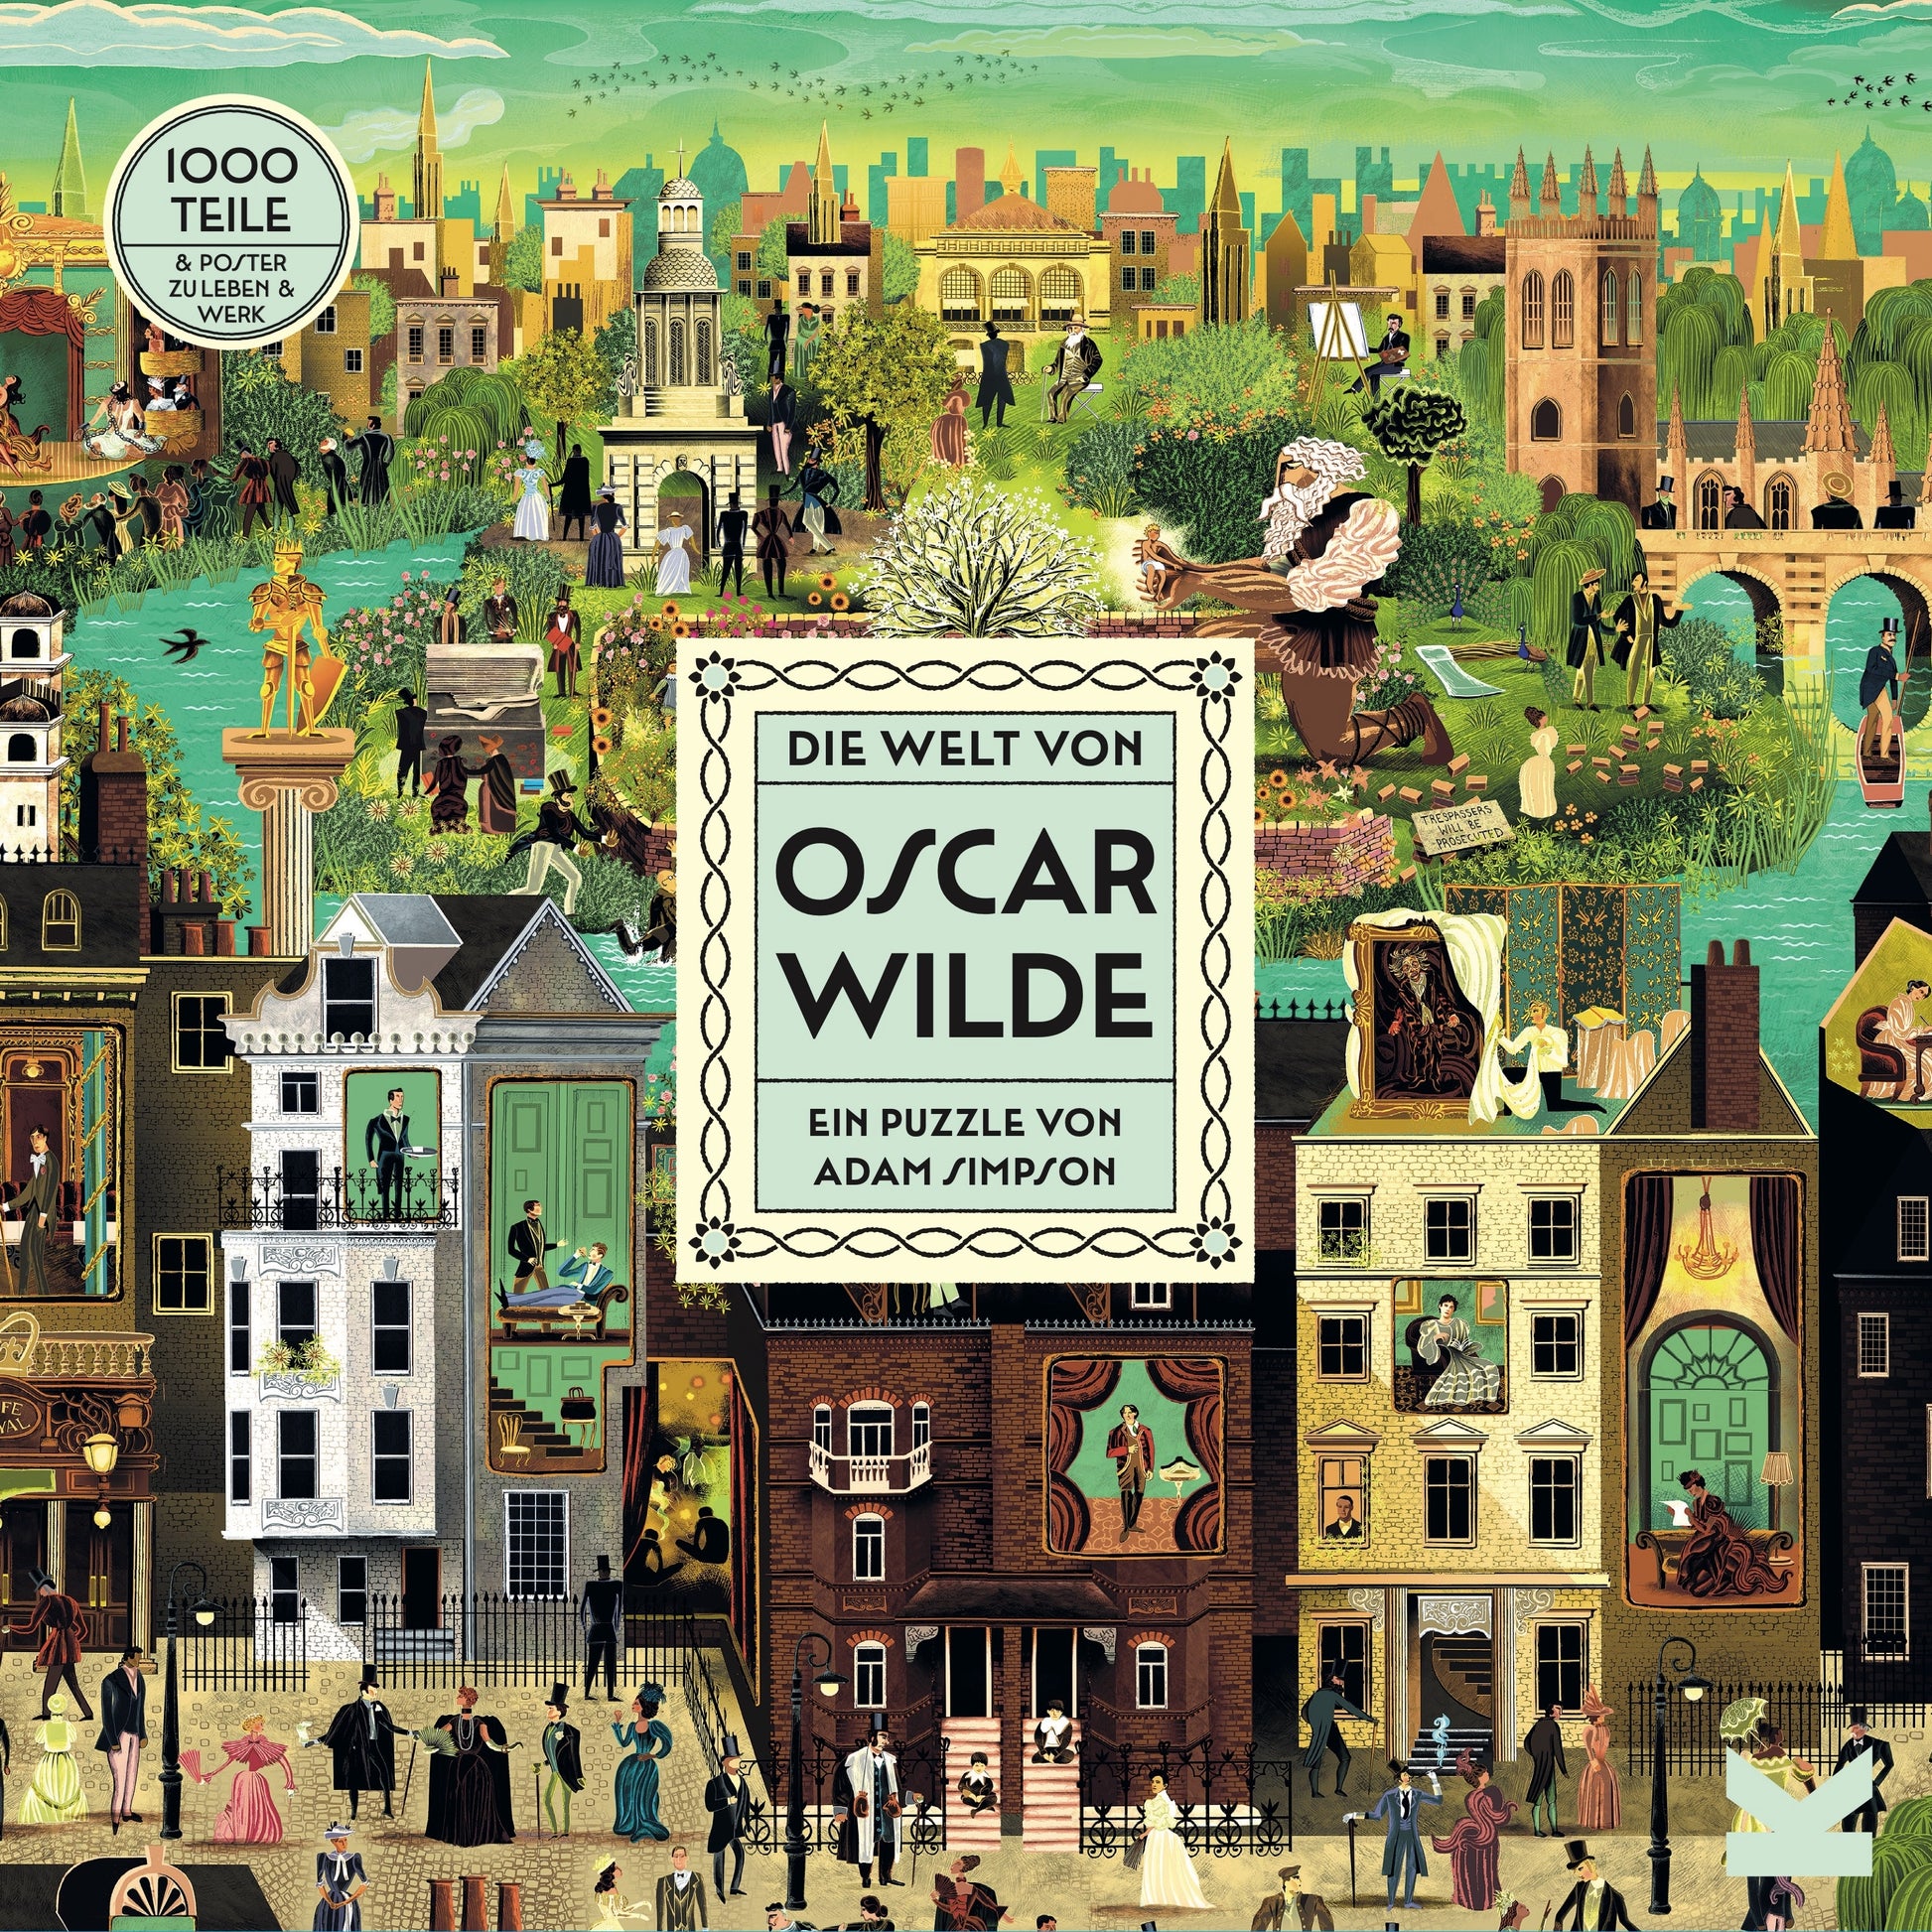 Die Welt von Oscar Wilde by Adam Simpson, Adam Simpson